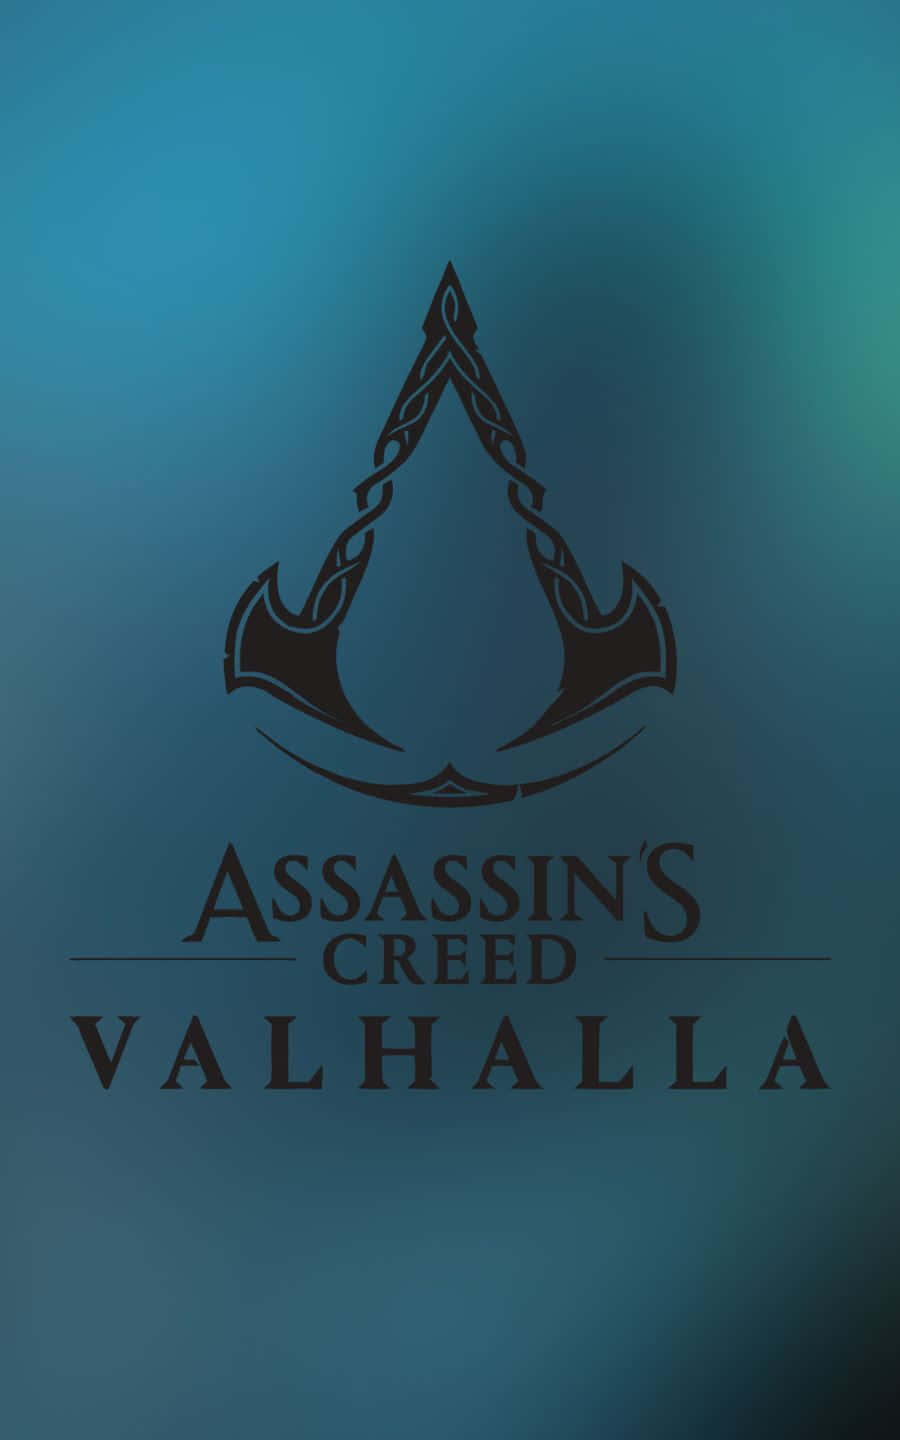 Titolodel Gioco E Logo Dello Sfondo Assassin's Creed Valhalla In 1440p.